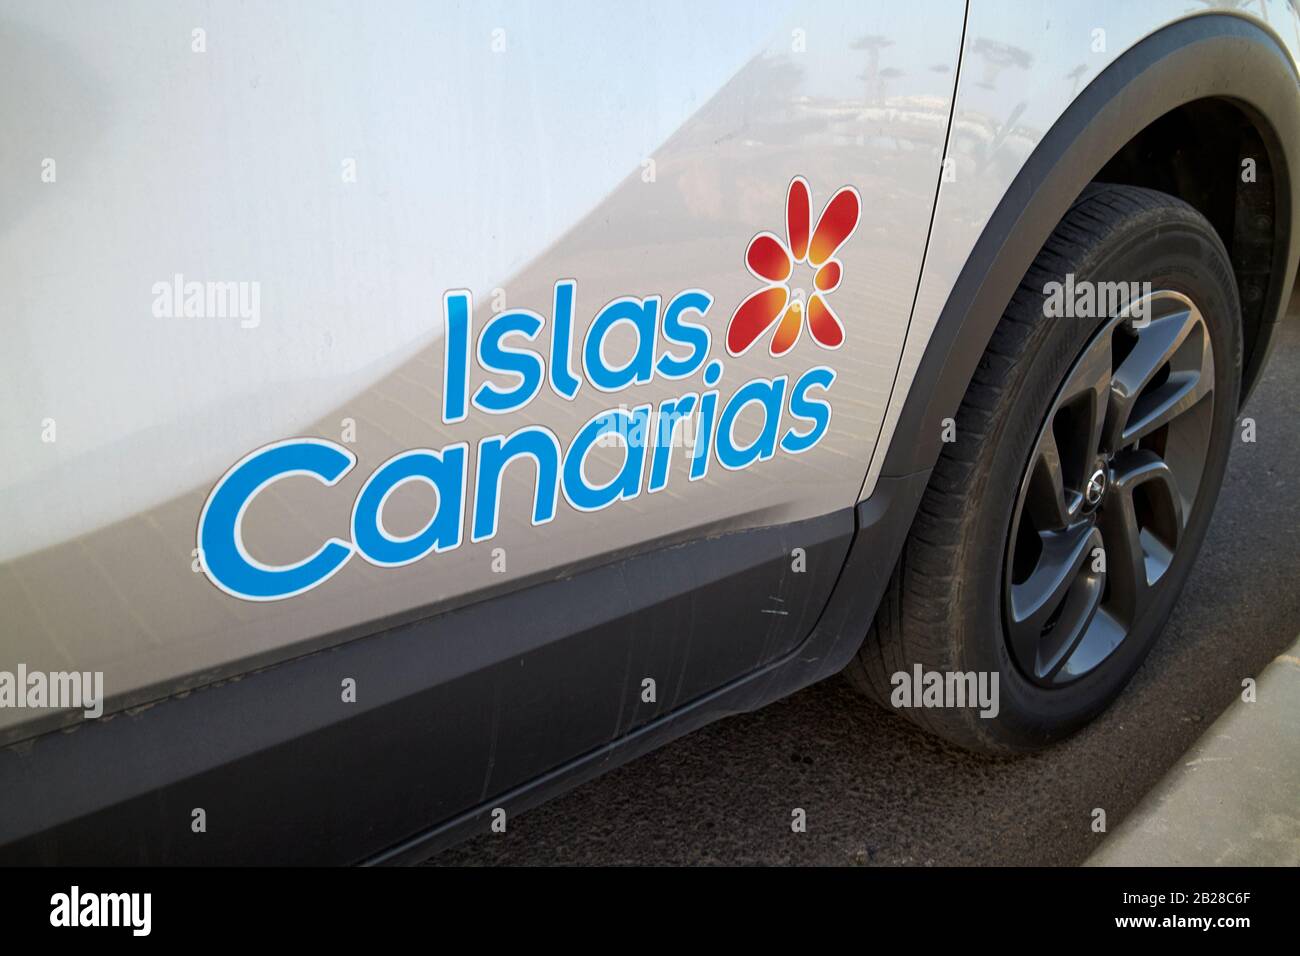 Islas canarias Logo an der Seite eines Mietwagen auf Lanzarote kanarische Inseln spanien Stockfoto